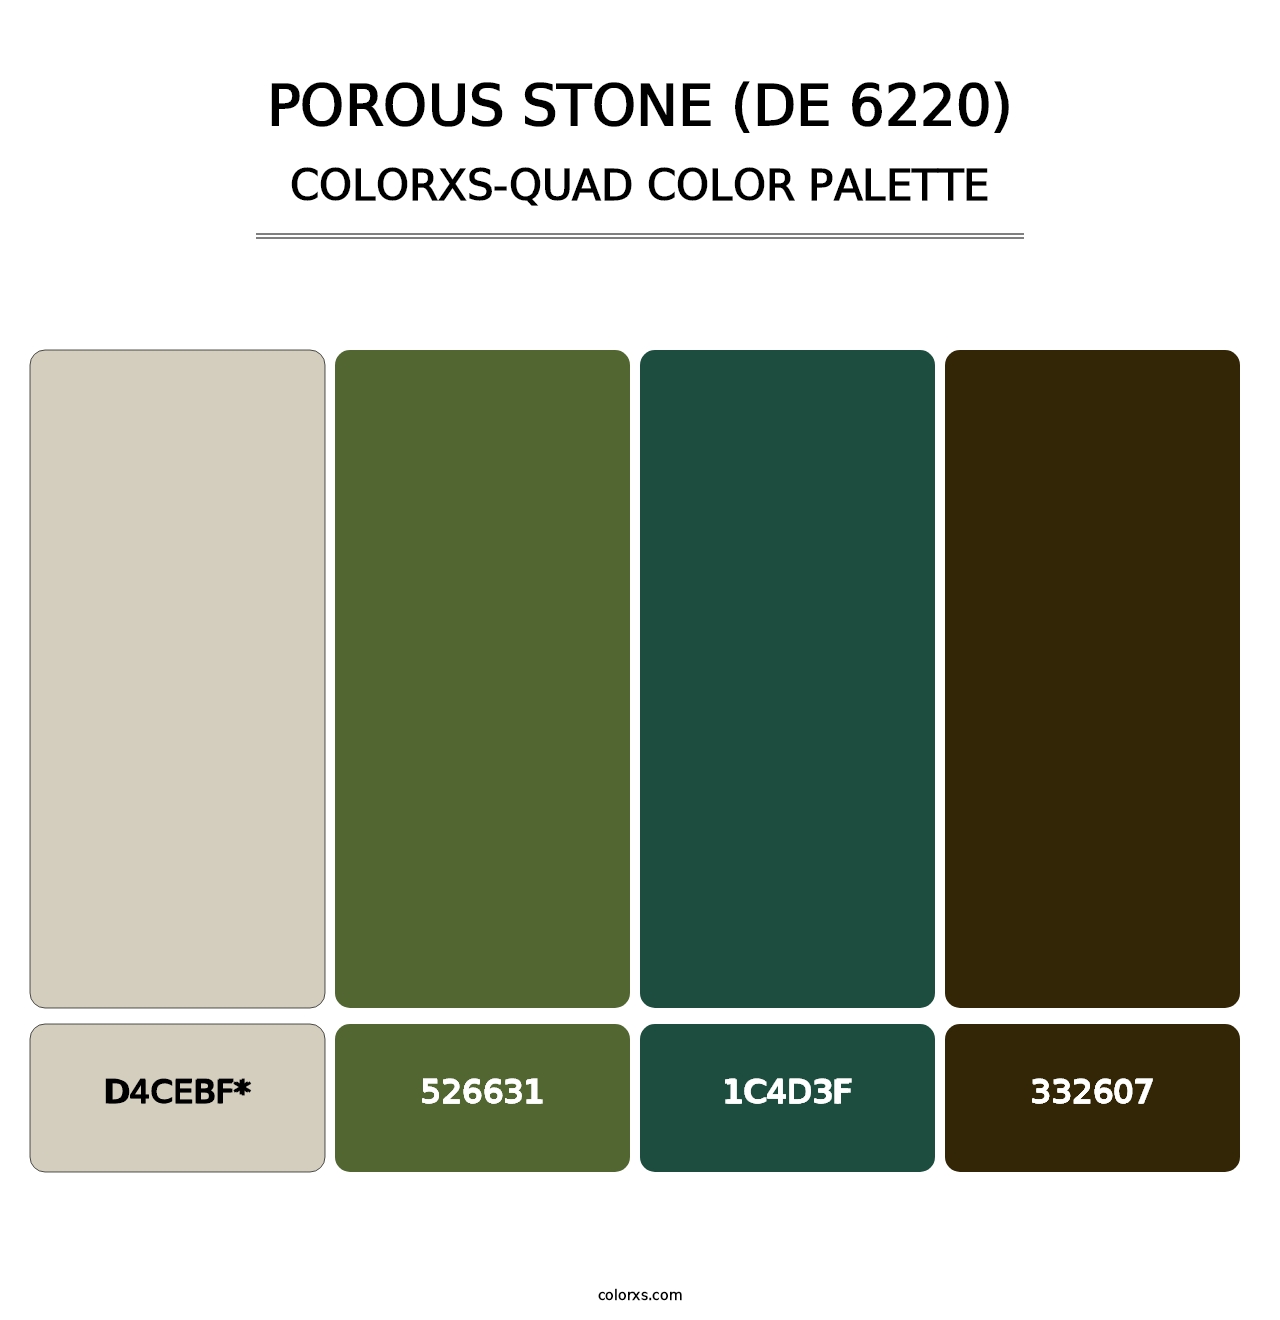 Porous Stone (DE 6220) - Colorxs Quad Palette